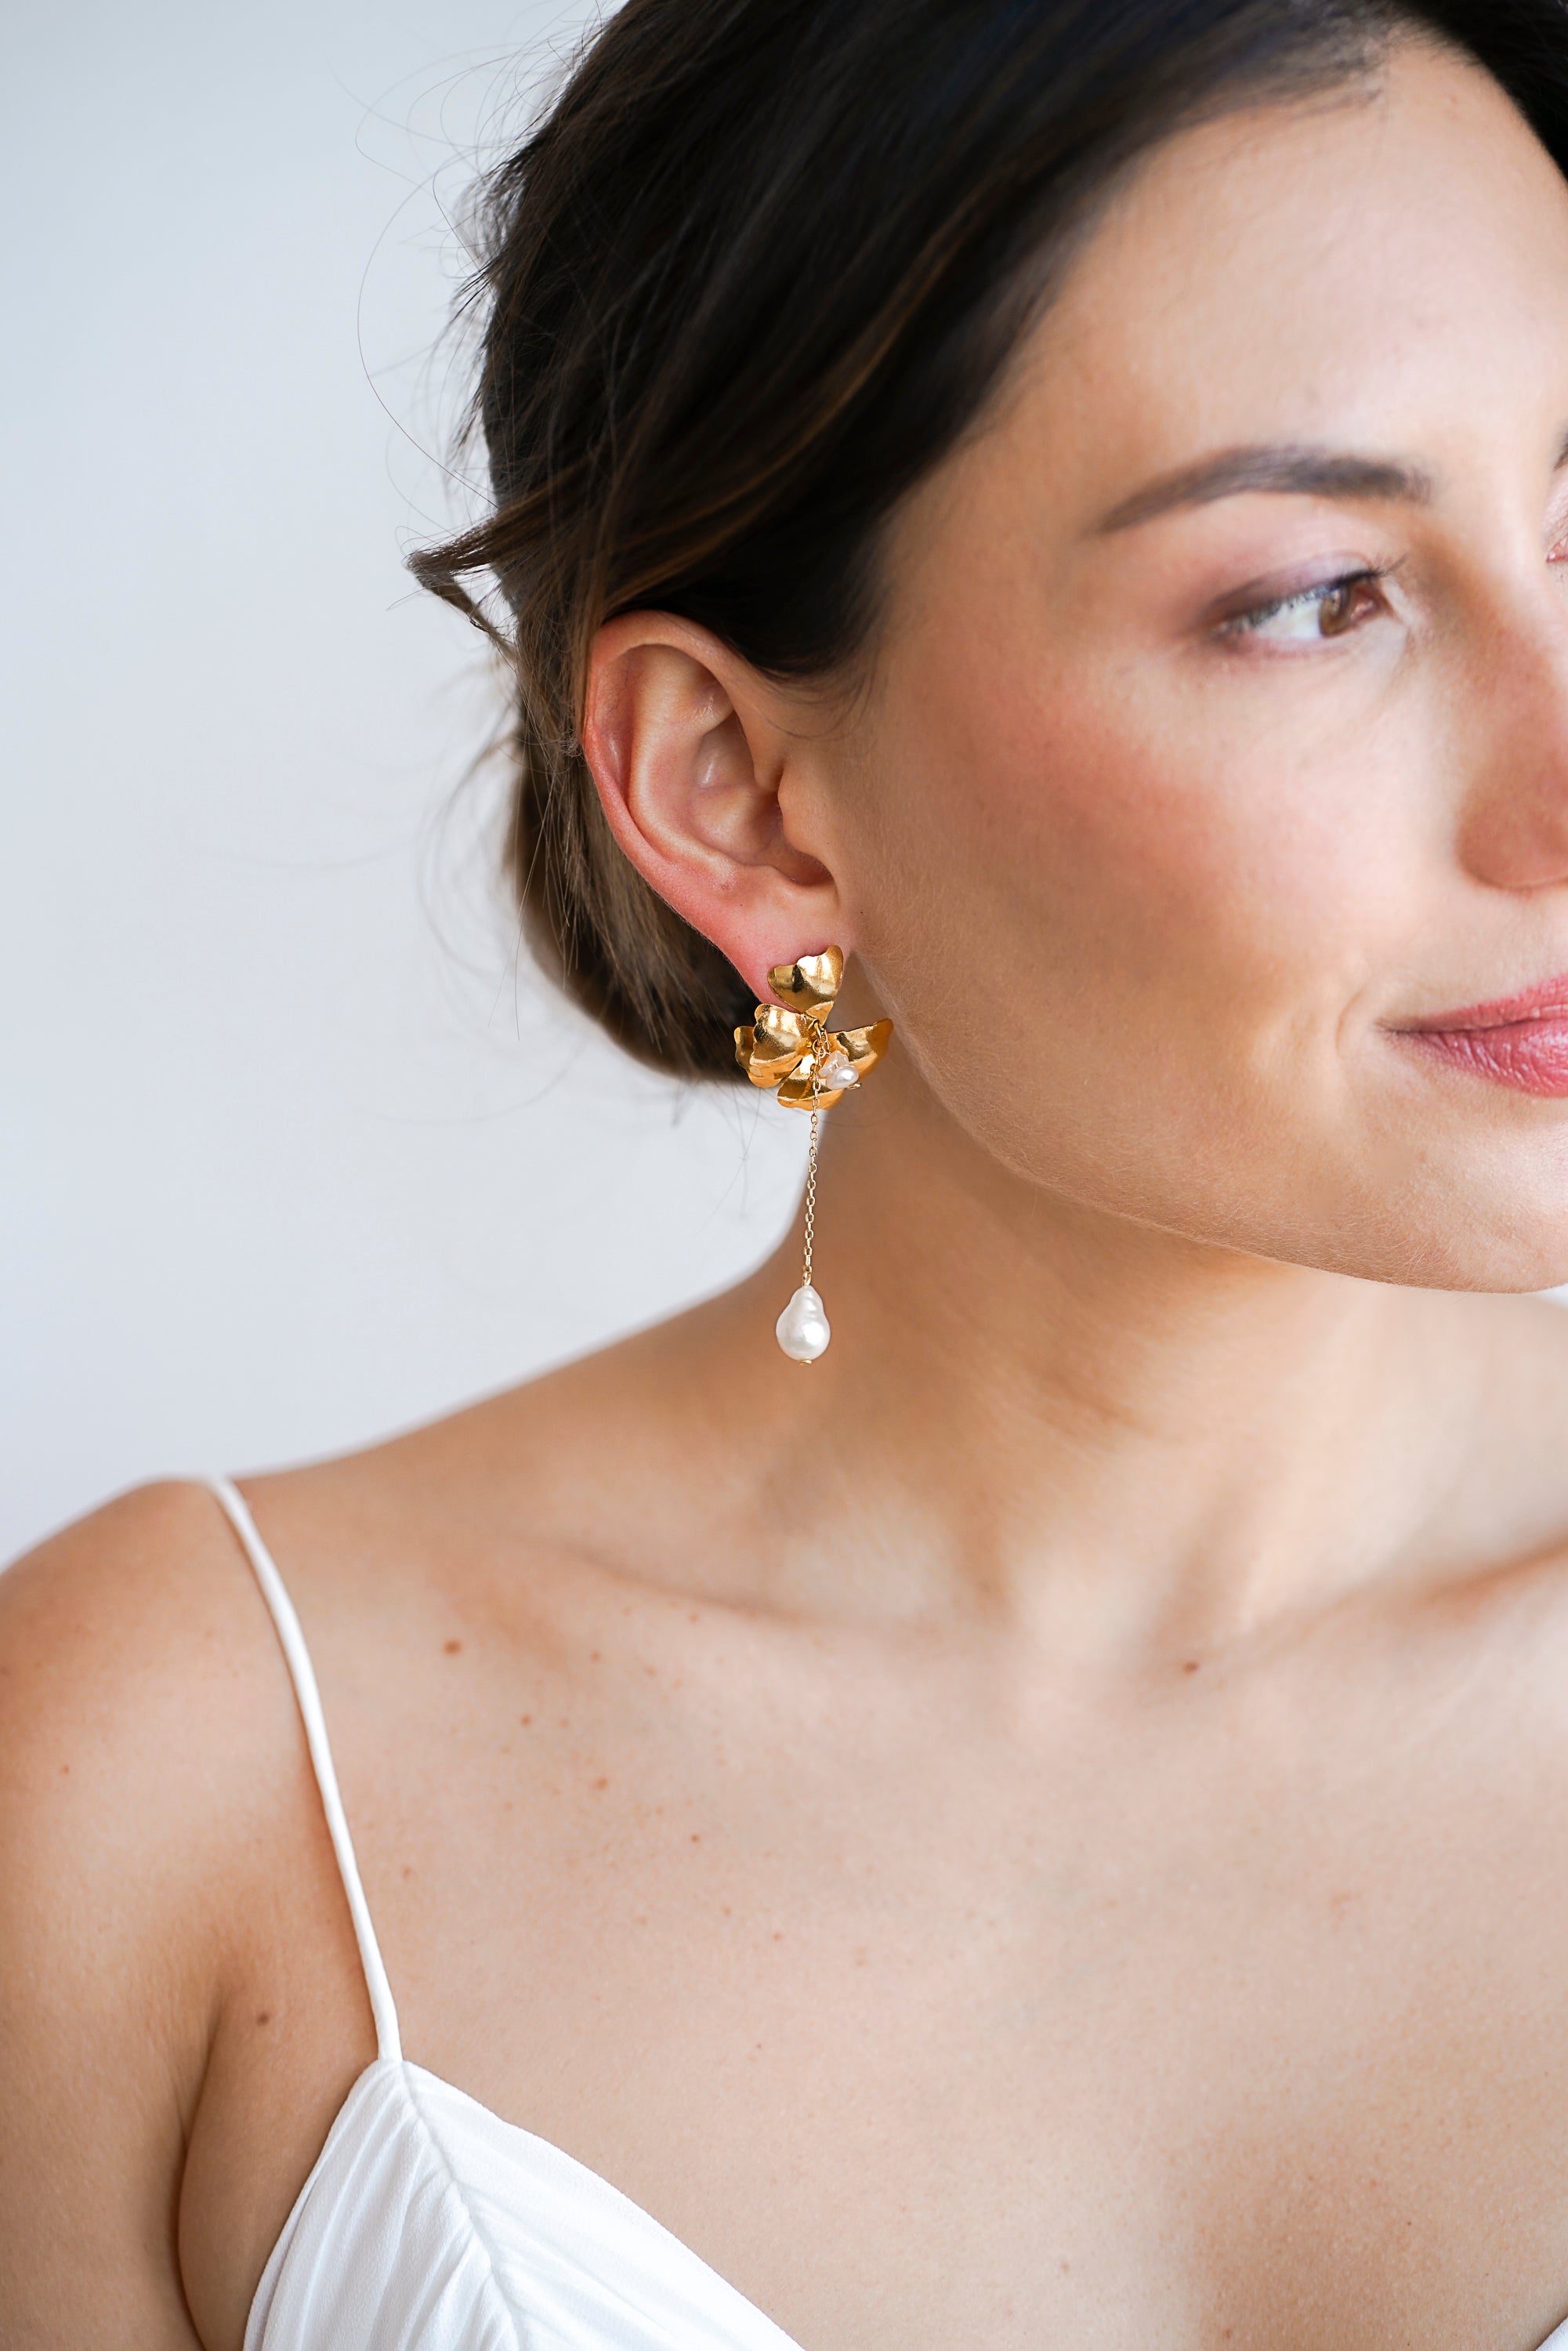 boucles d'oreilles pendantes avec une fleur en bronze plaqué or ornée et une chaine avec une perle naturelle au bout